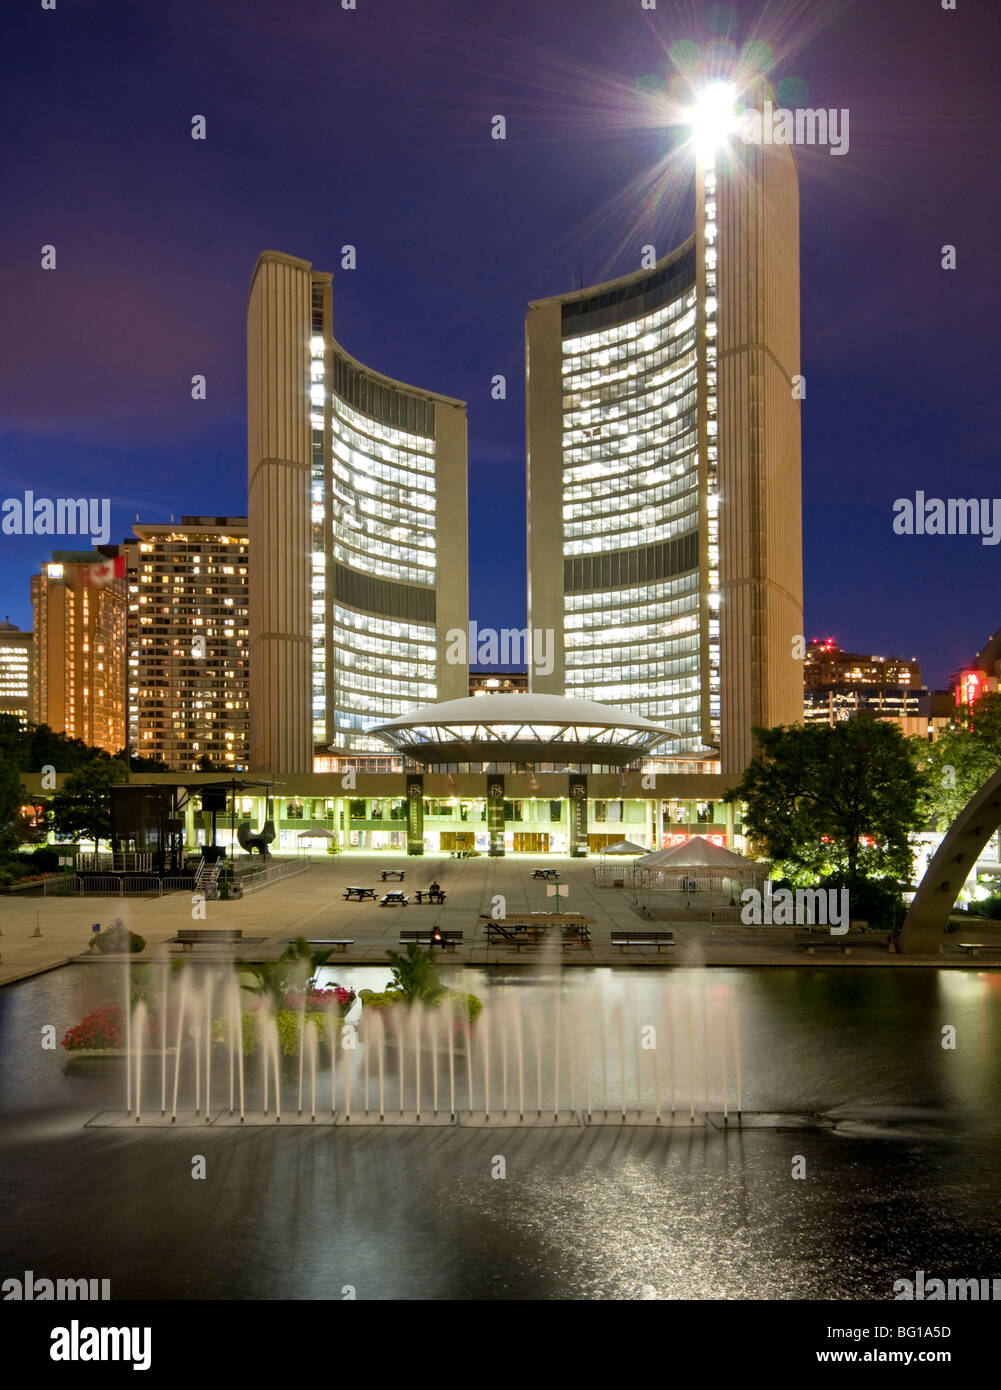 Neues Rathaus & Nathan Phillips Square bei Nacht, Toronto, Ontario, Kanada, Nordamerika Stockfoto